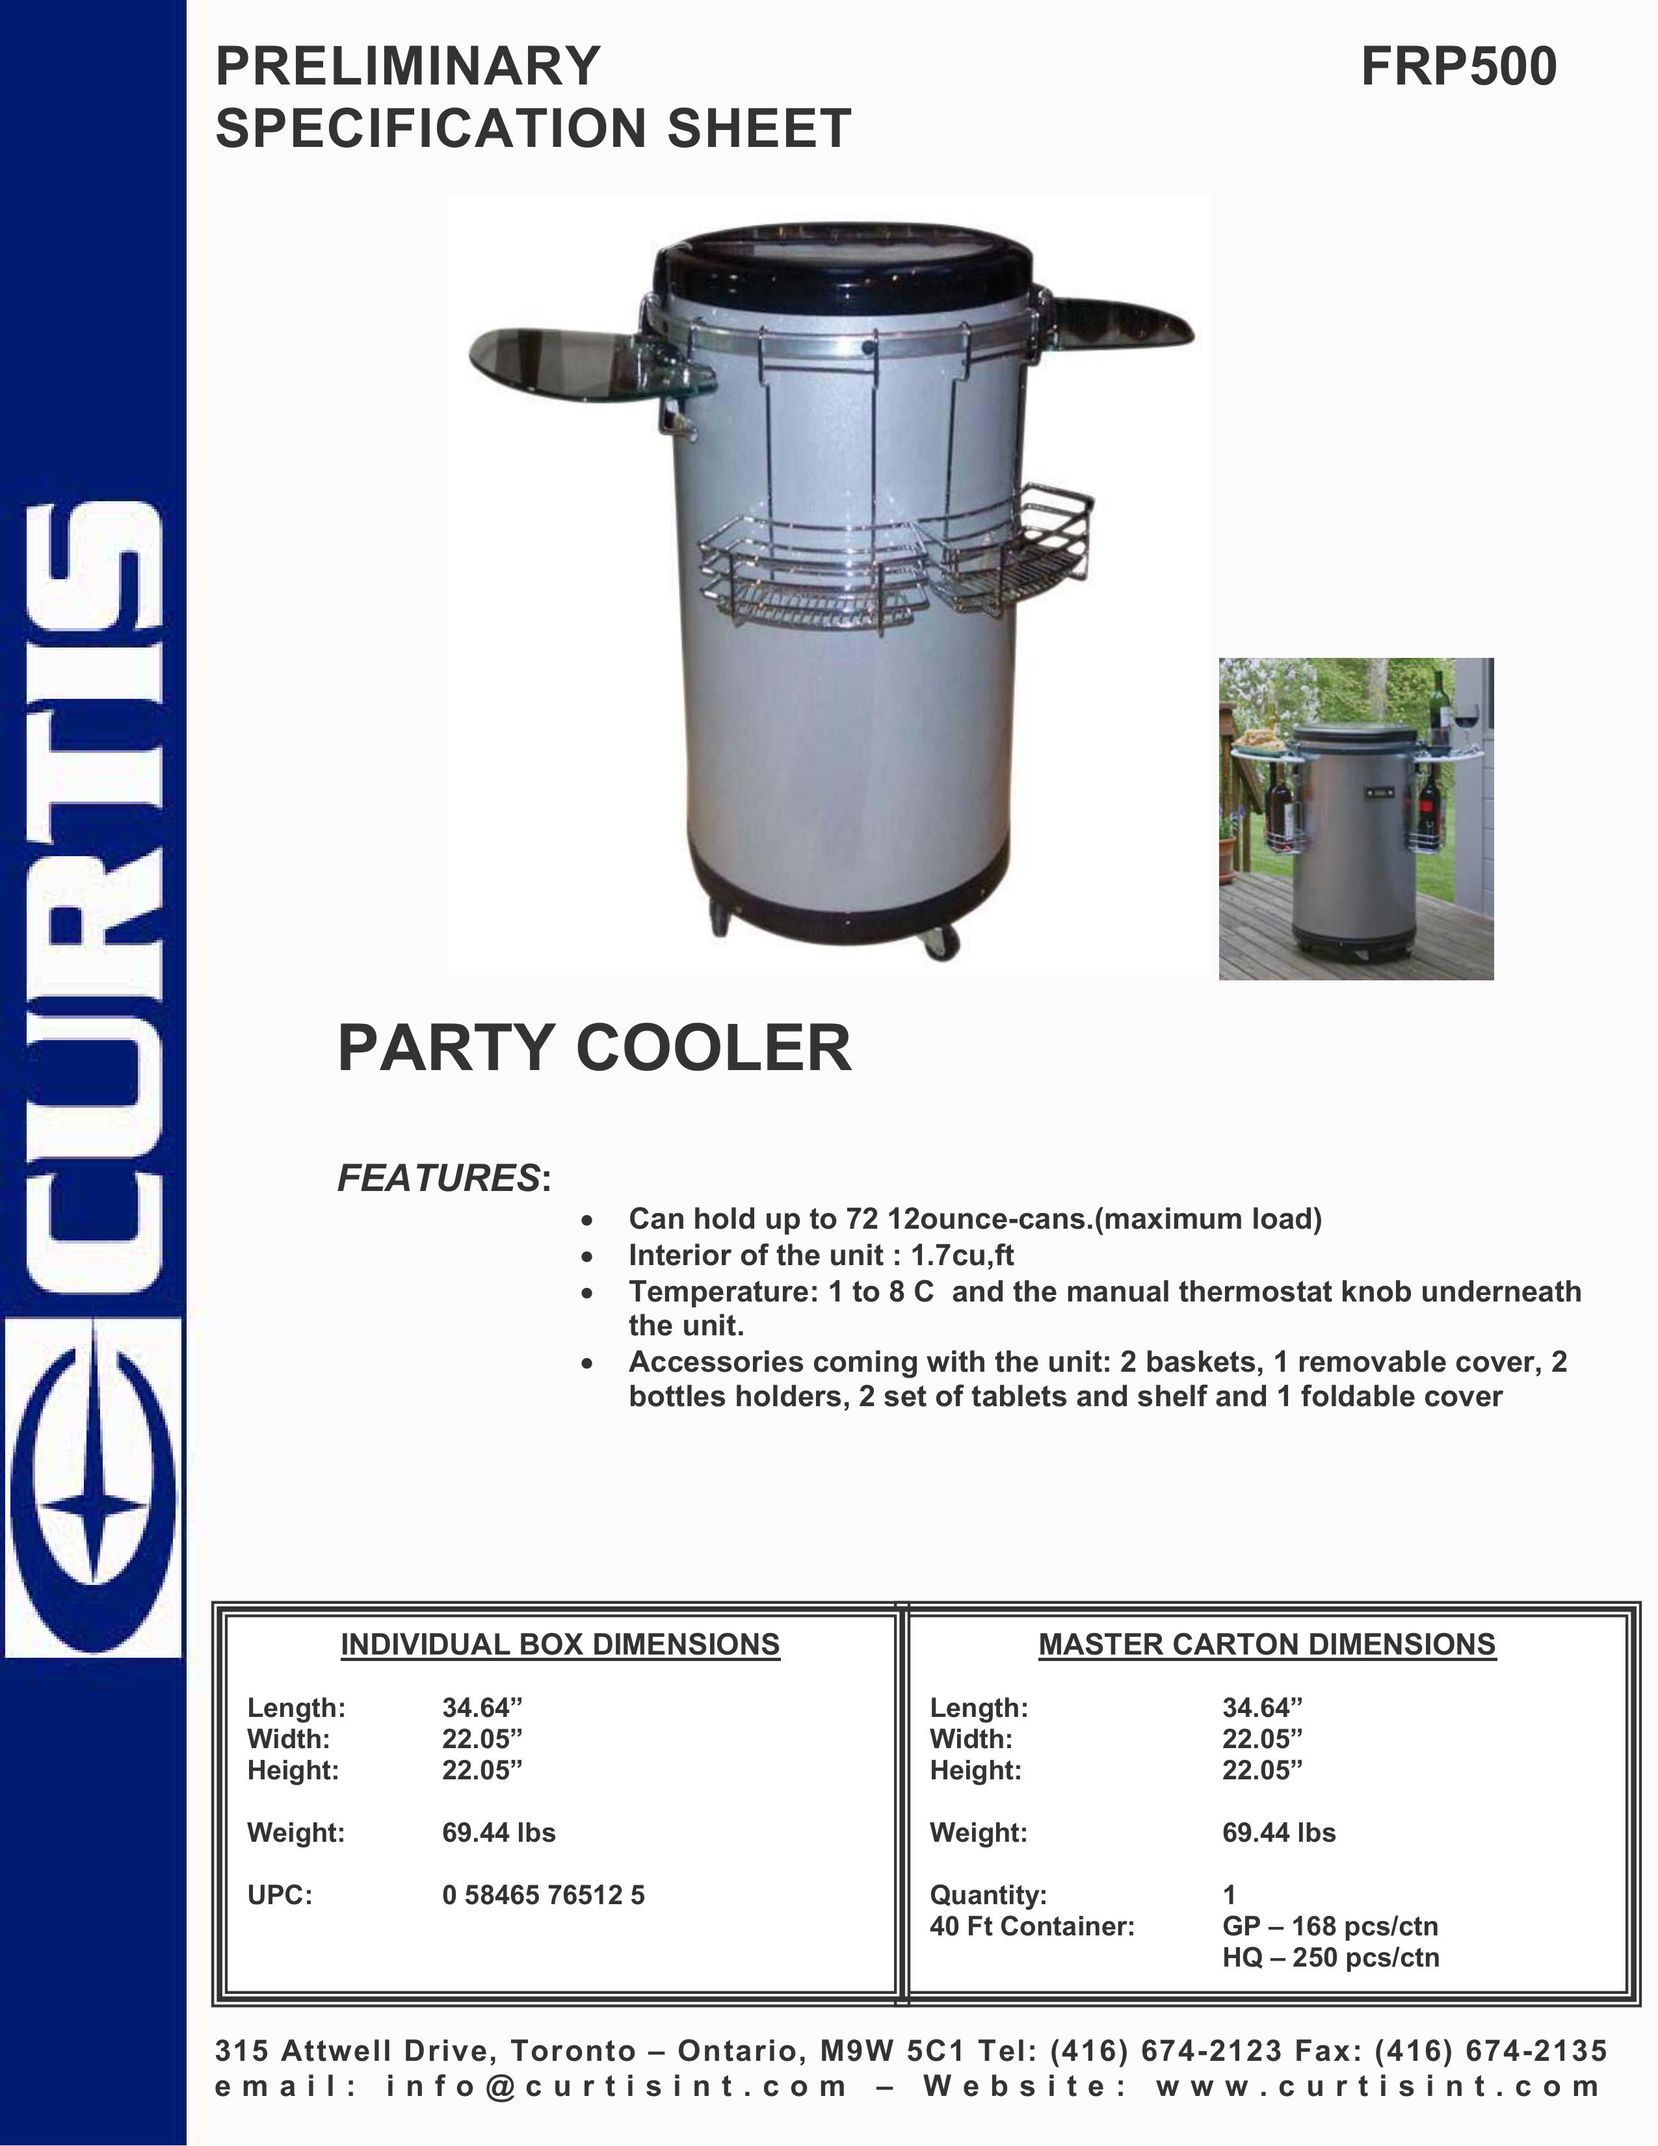 Curtis FRP500 Beverage Dispenser User Manual